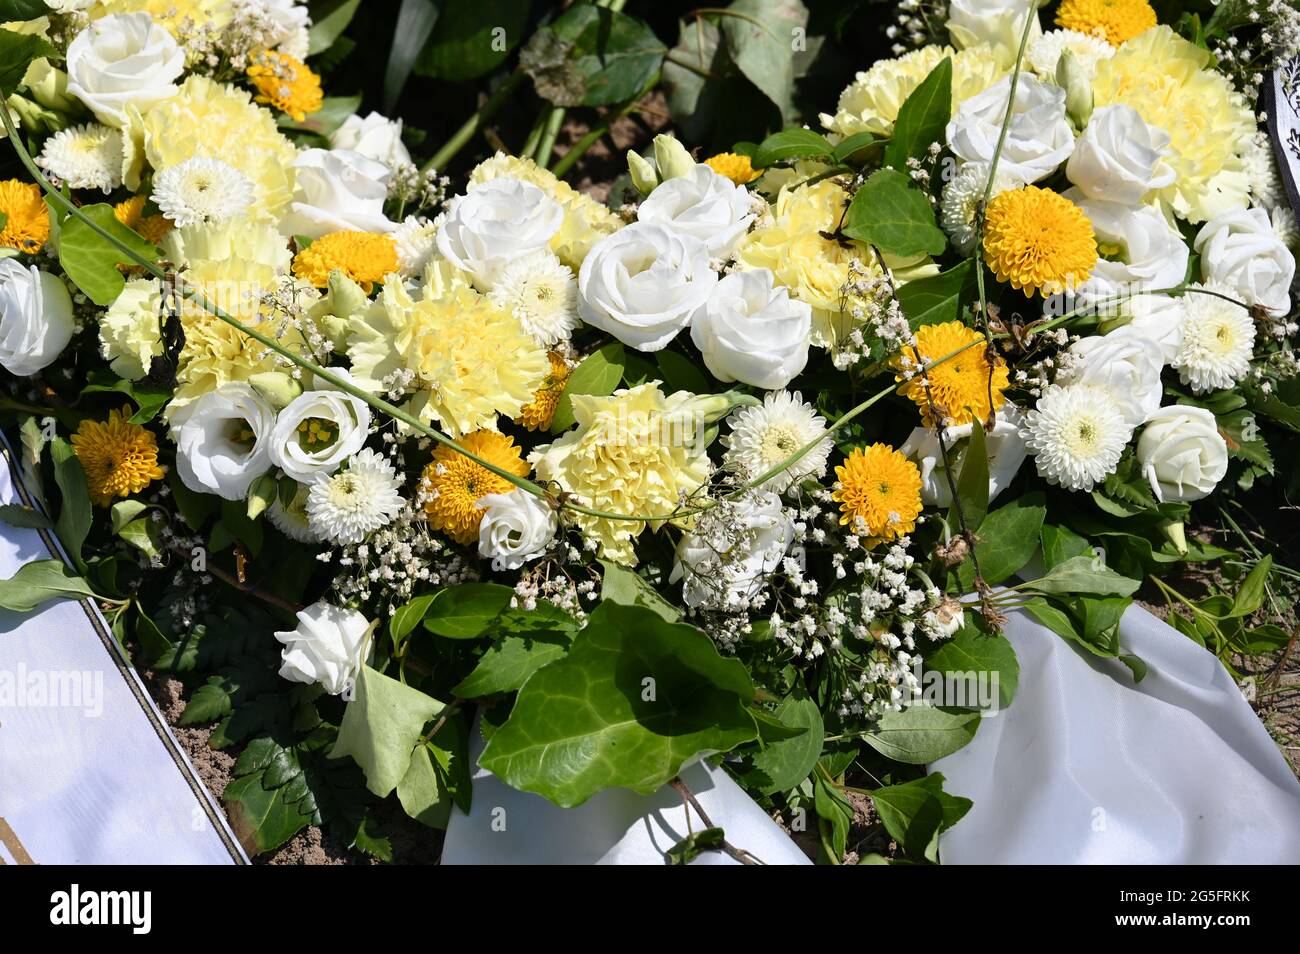 Corona de flores blancas y amarillas en una tumba Foto de stock